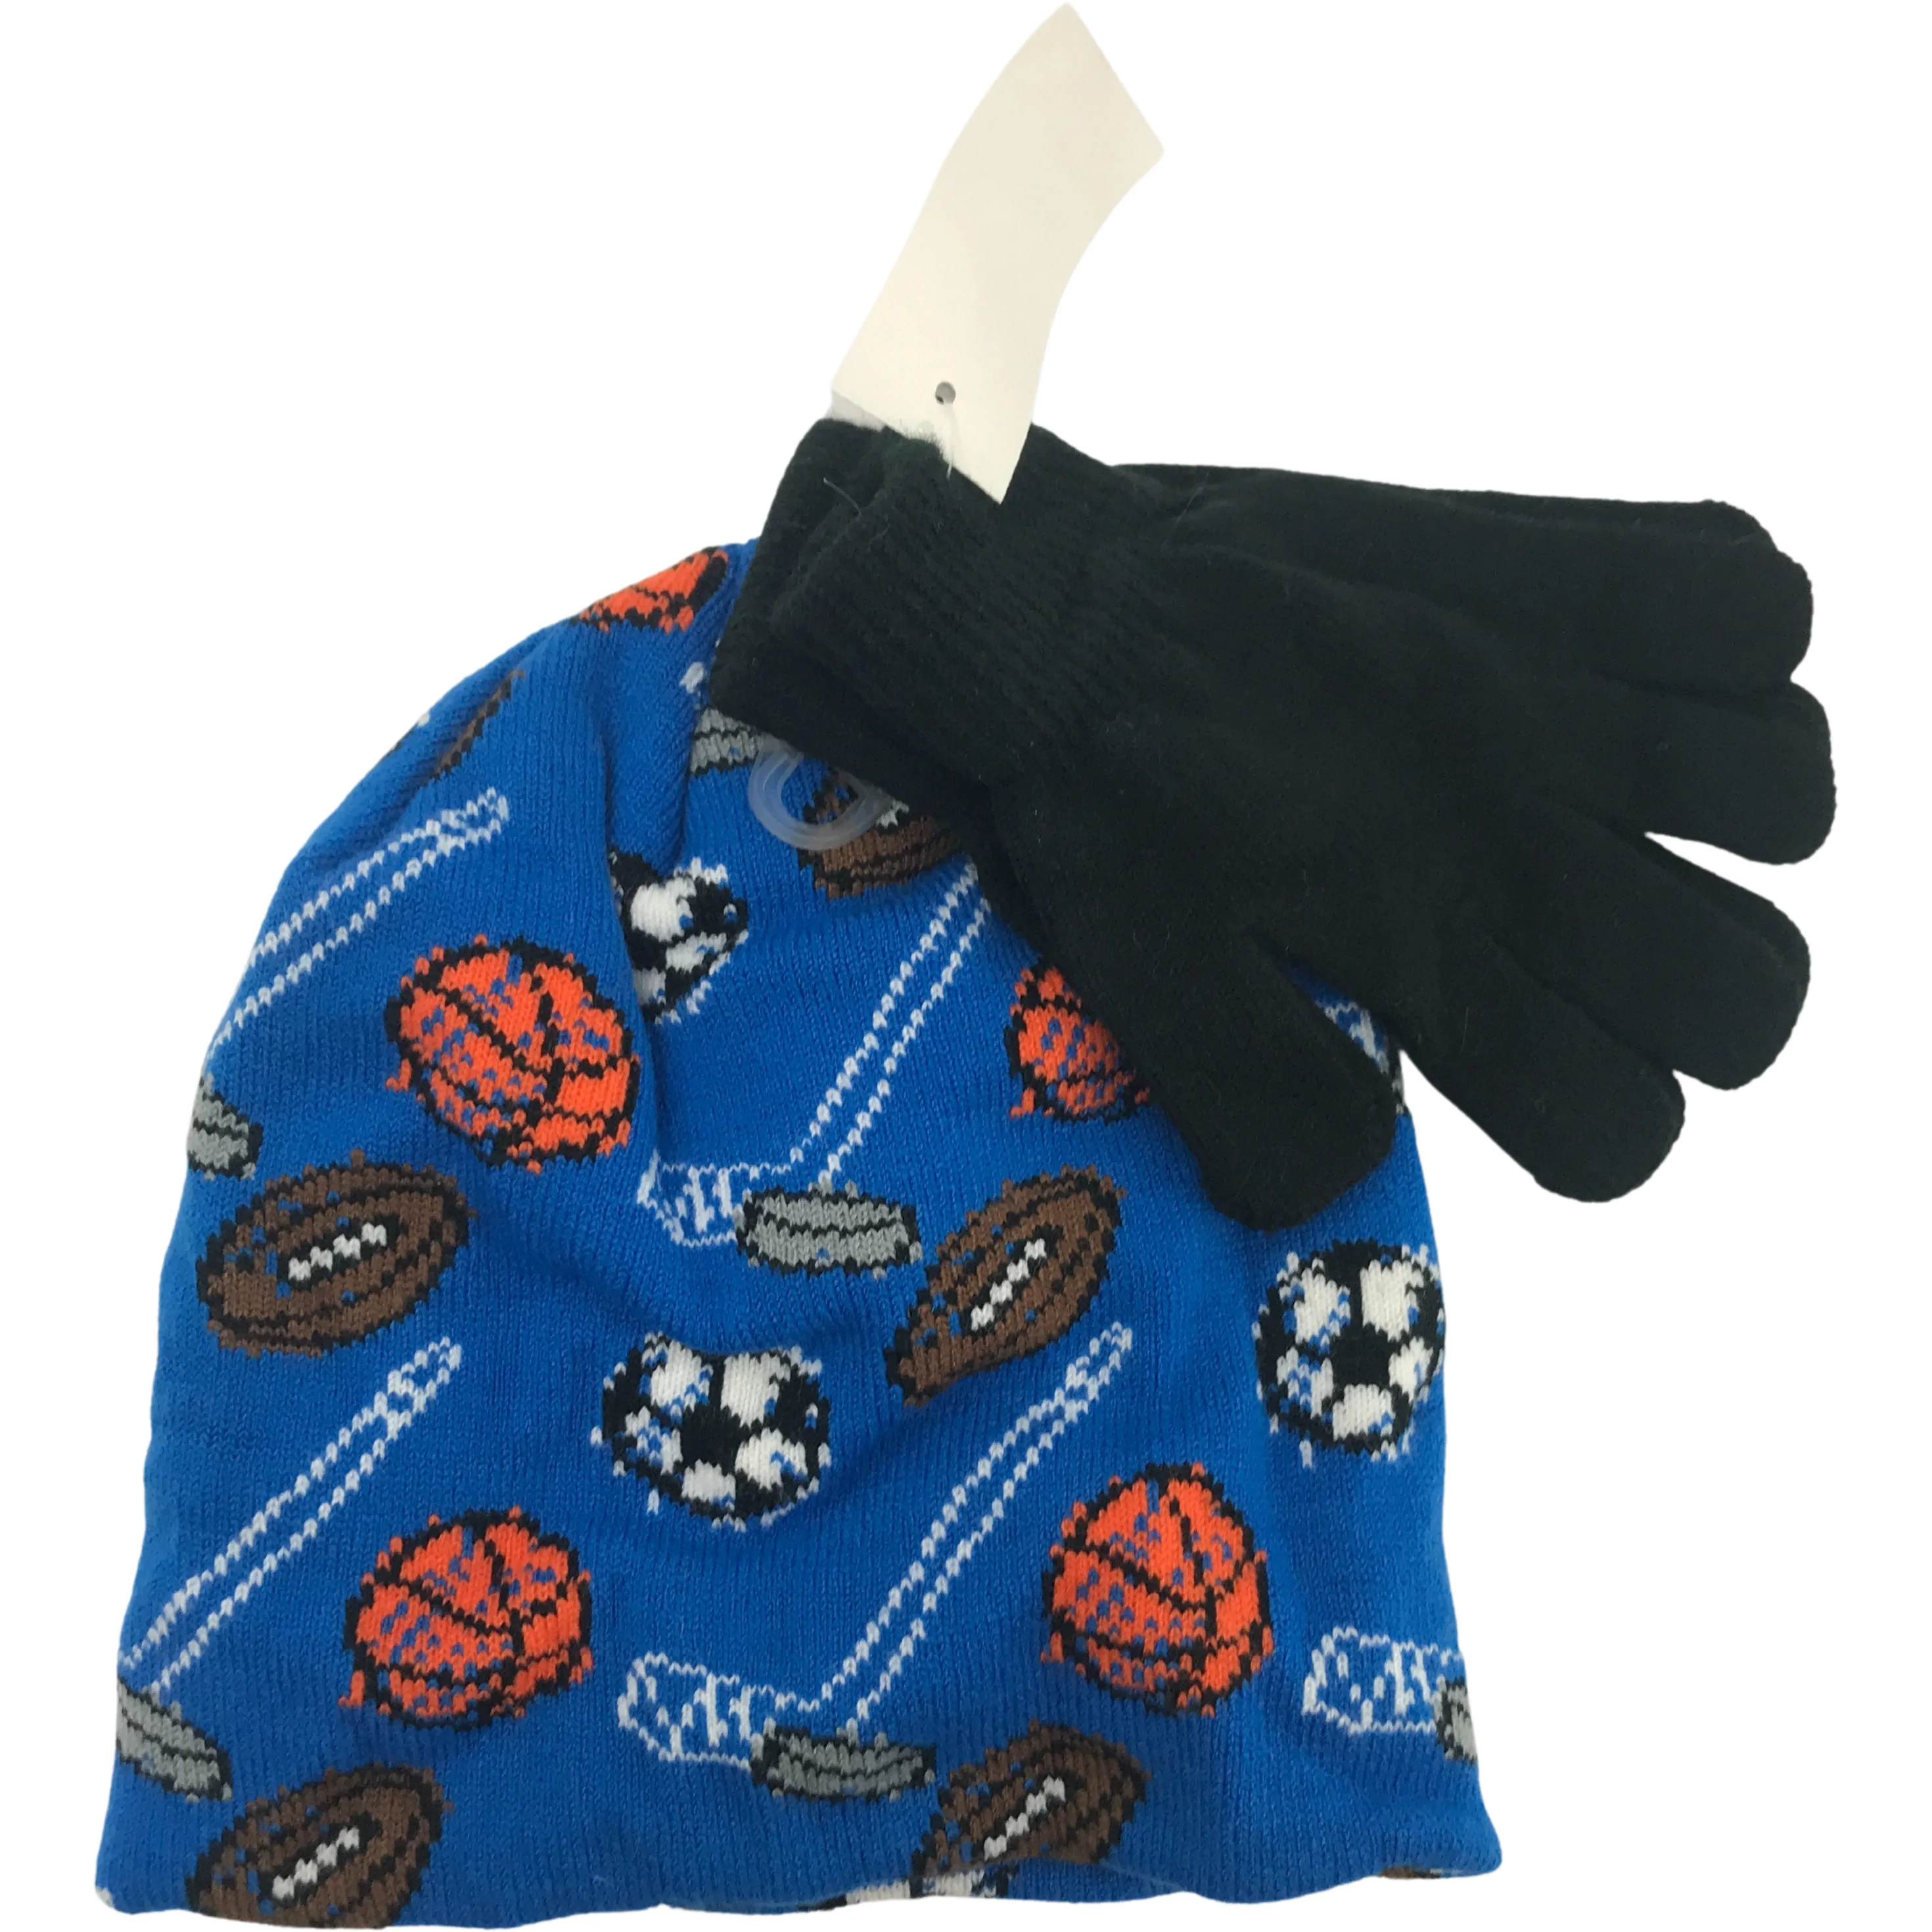 Children's Hat & Glove Set / Sports / Boy's Winter Hat / Lightweight Gloves / Size 4-7